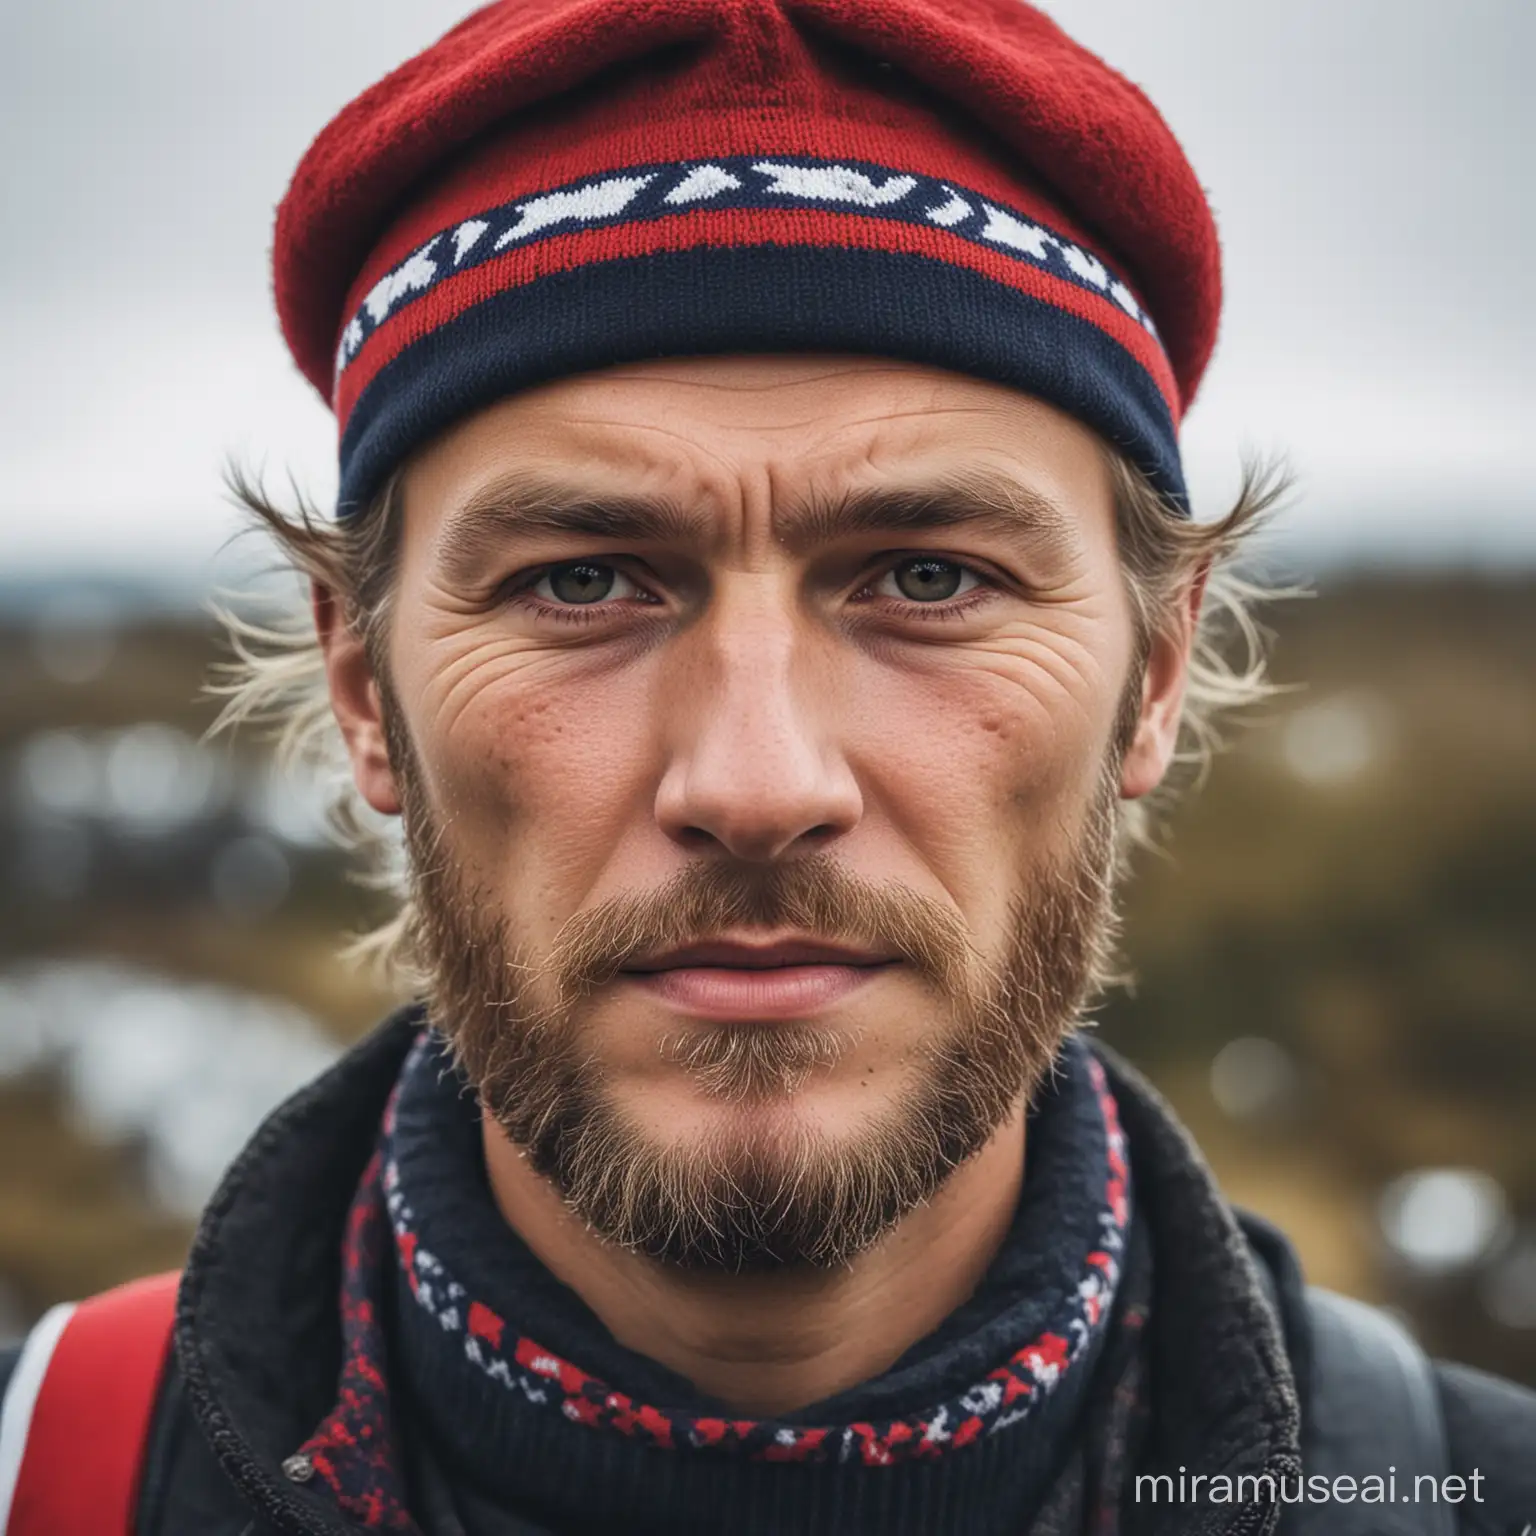 a norwegian man